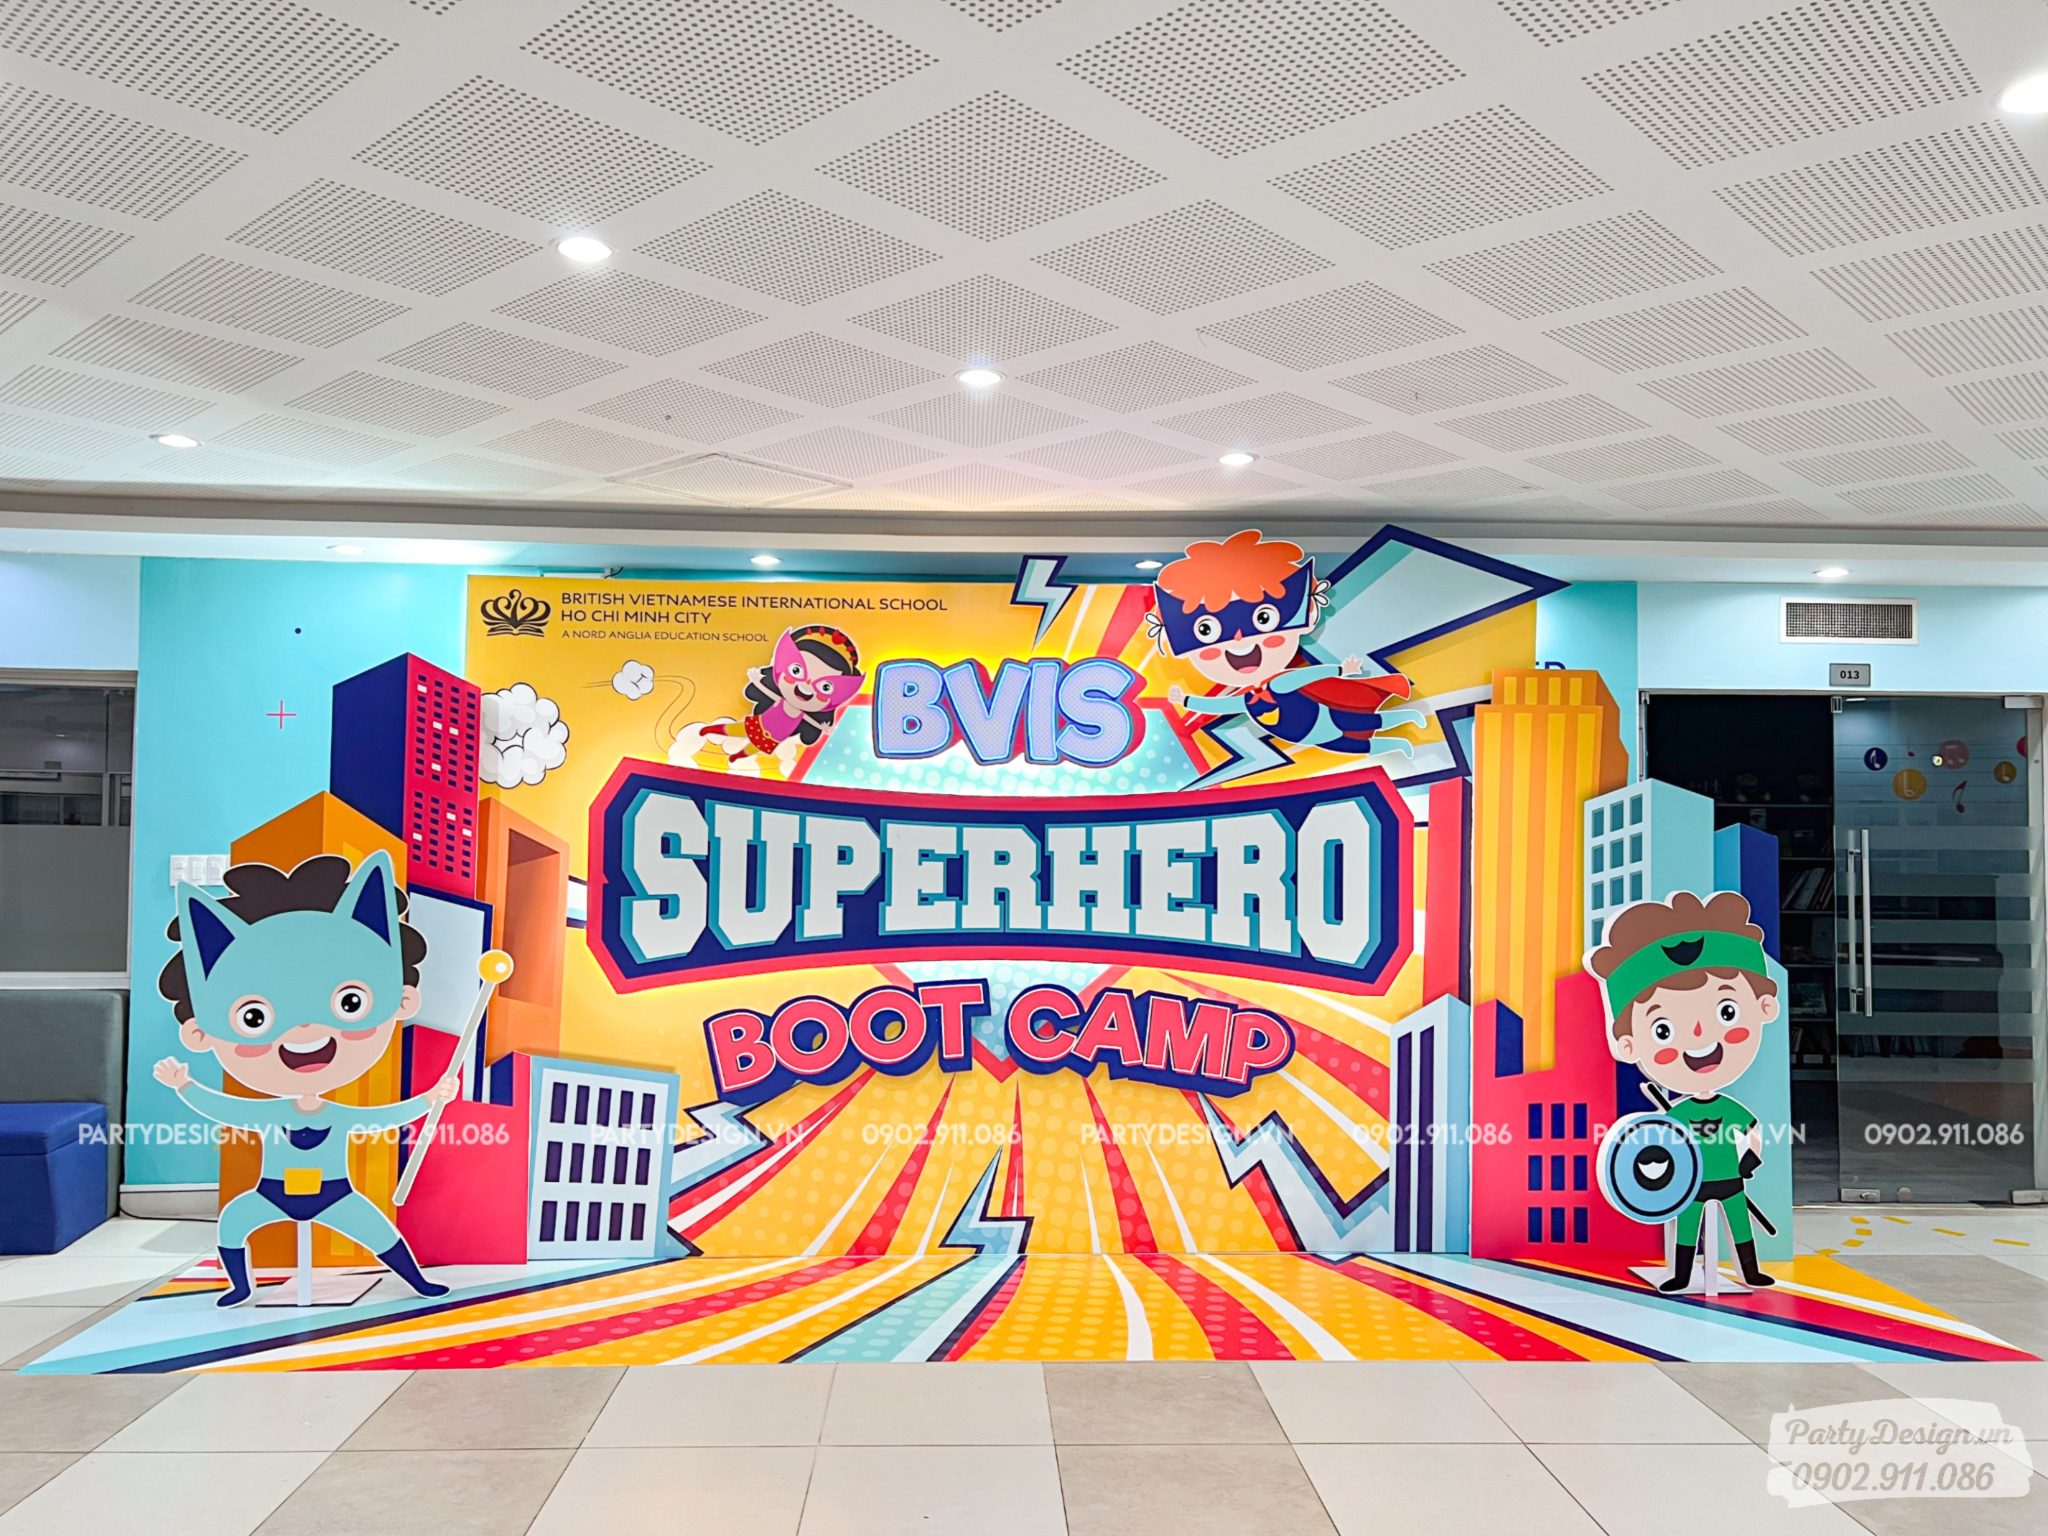 Trang trí backdrop sự kiện Superhero Boot Camp tại trường BVIS - chủ đề siêu anh hùng